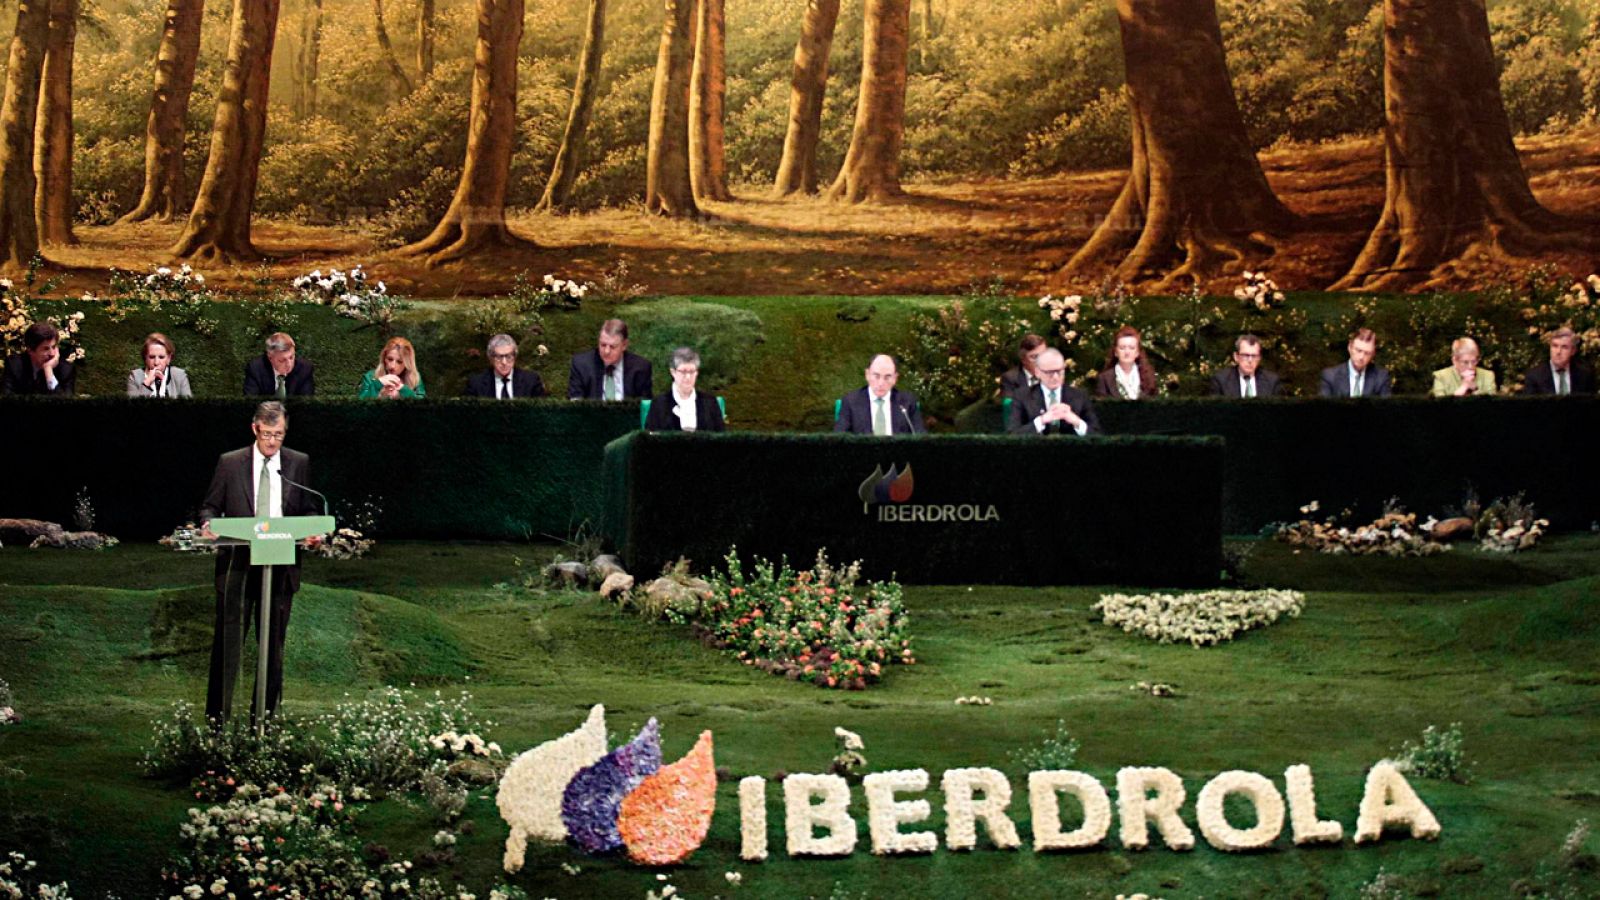 La dirección de Iberdrola en una junta de accionistas